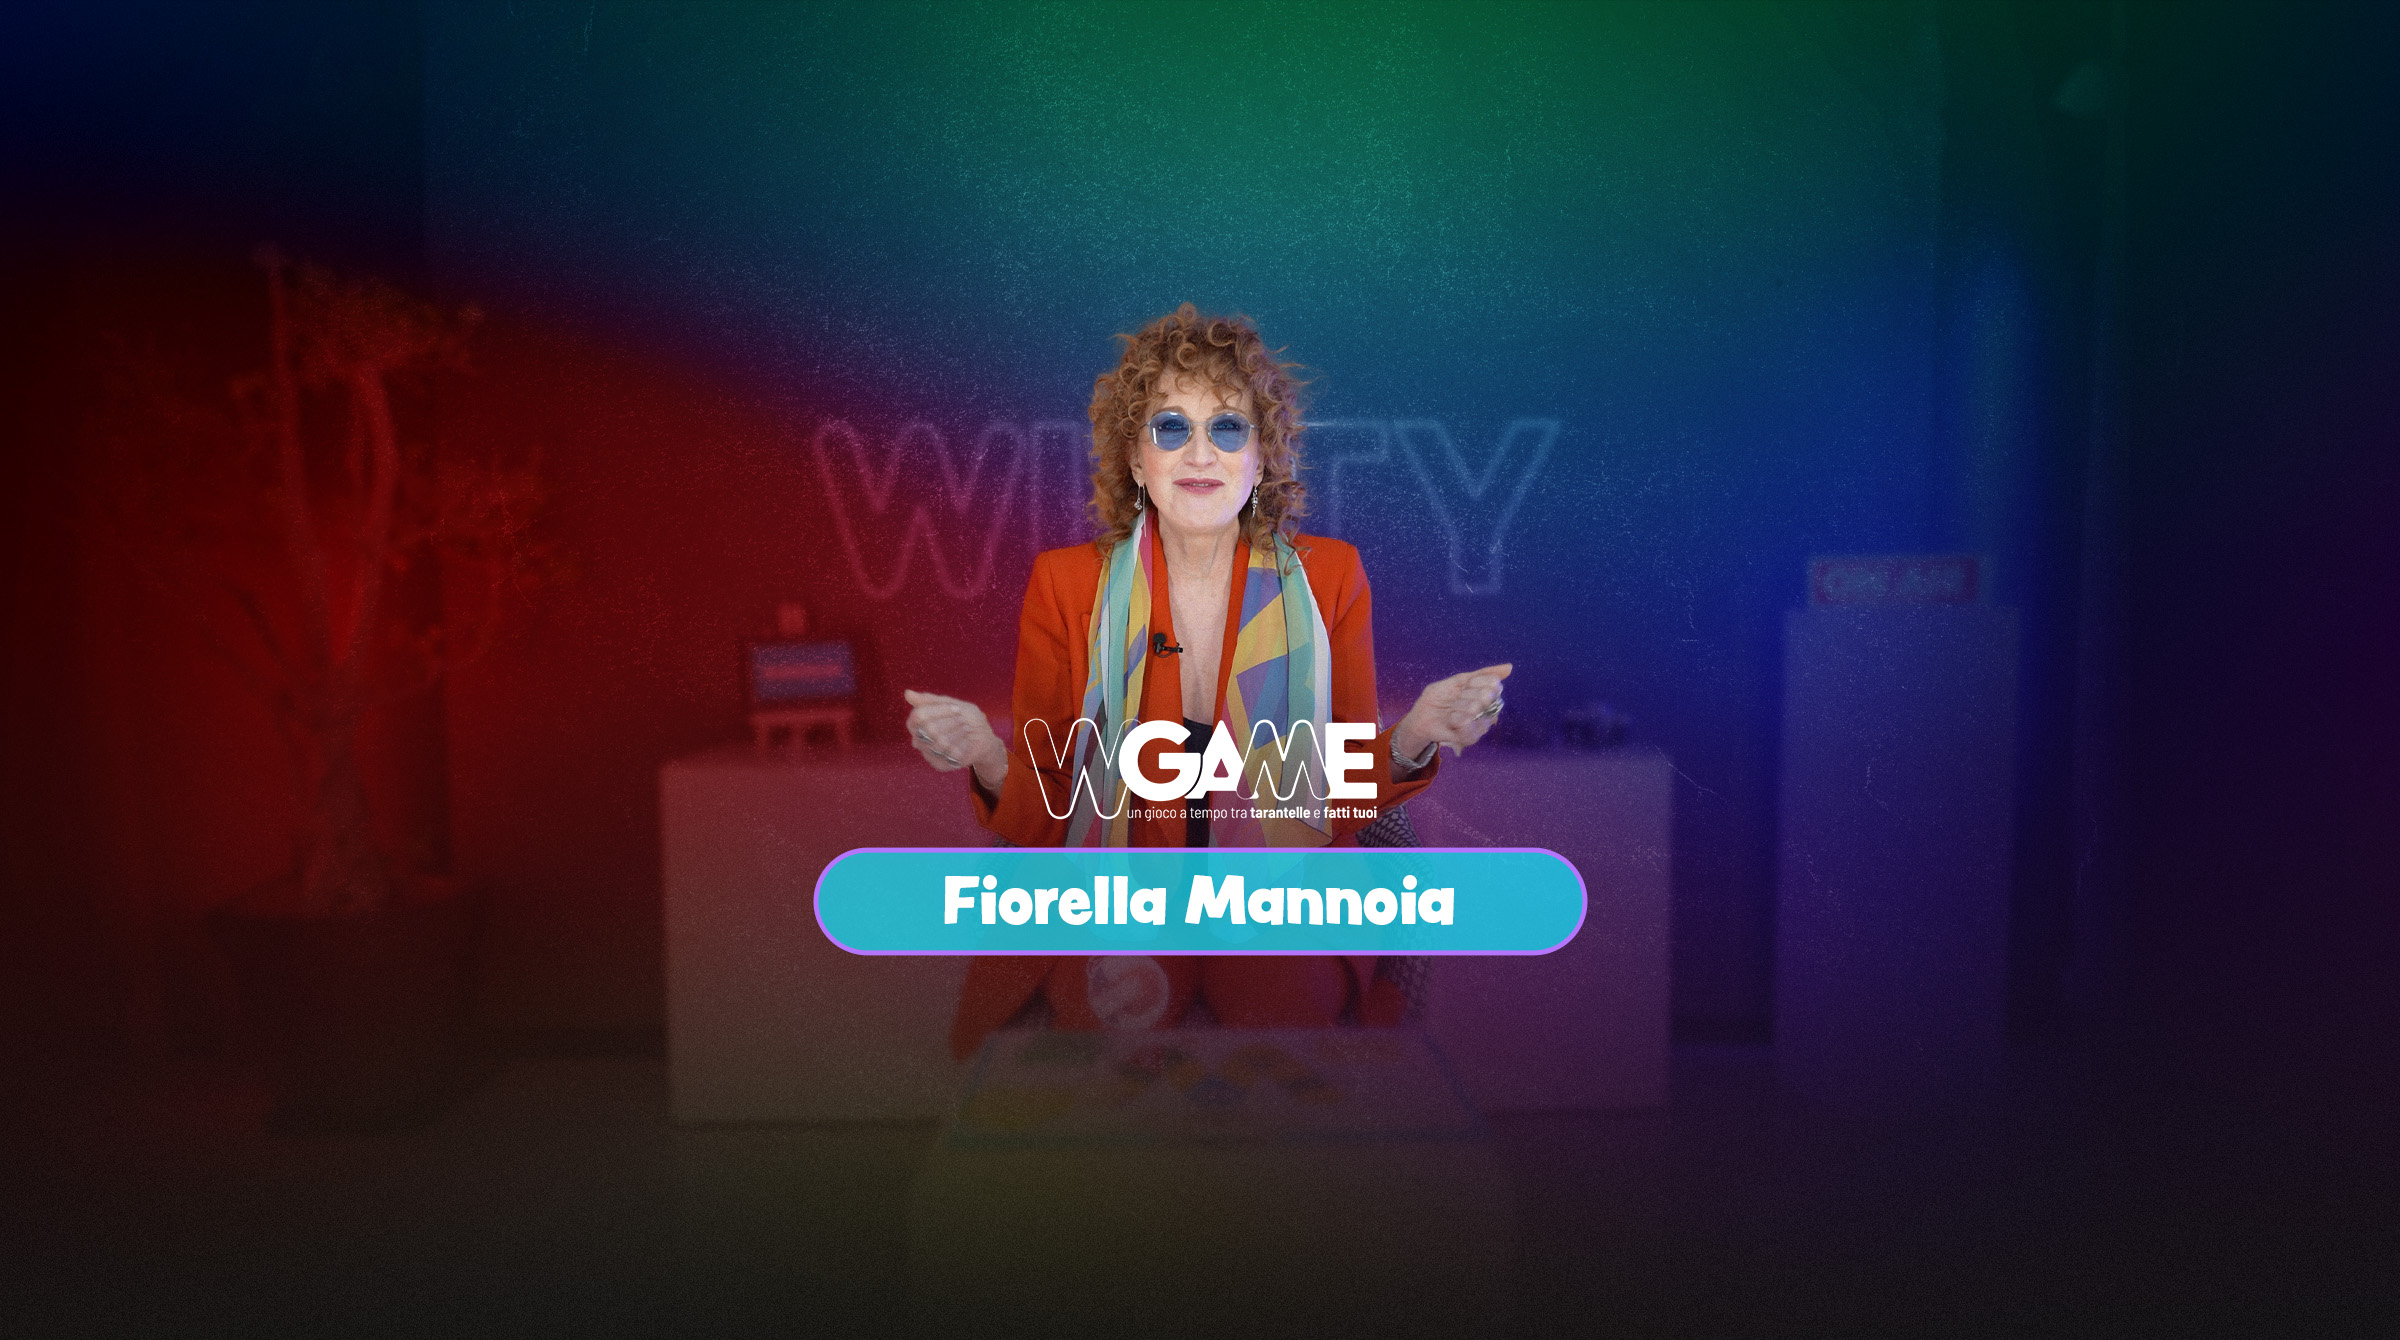 WITTY_W Game Fiorella Mannoia SLIDER